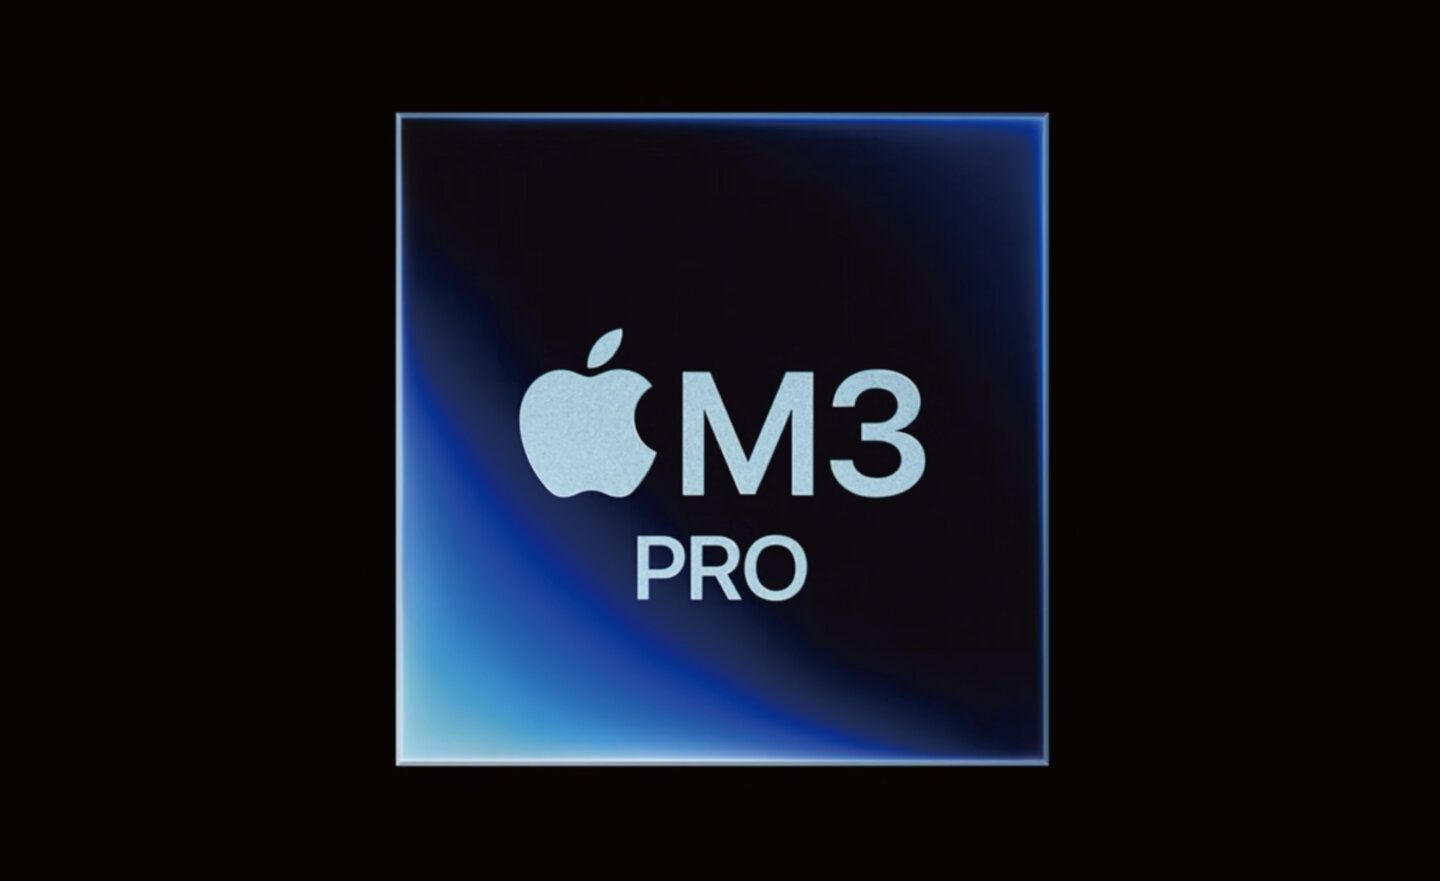 失望了！Geekbench 跑分顯示 M3 Pro 晶片只比 M2 Pro 快 6%